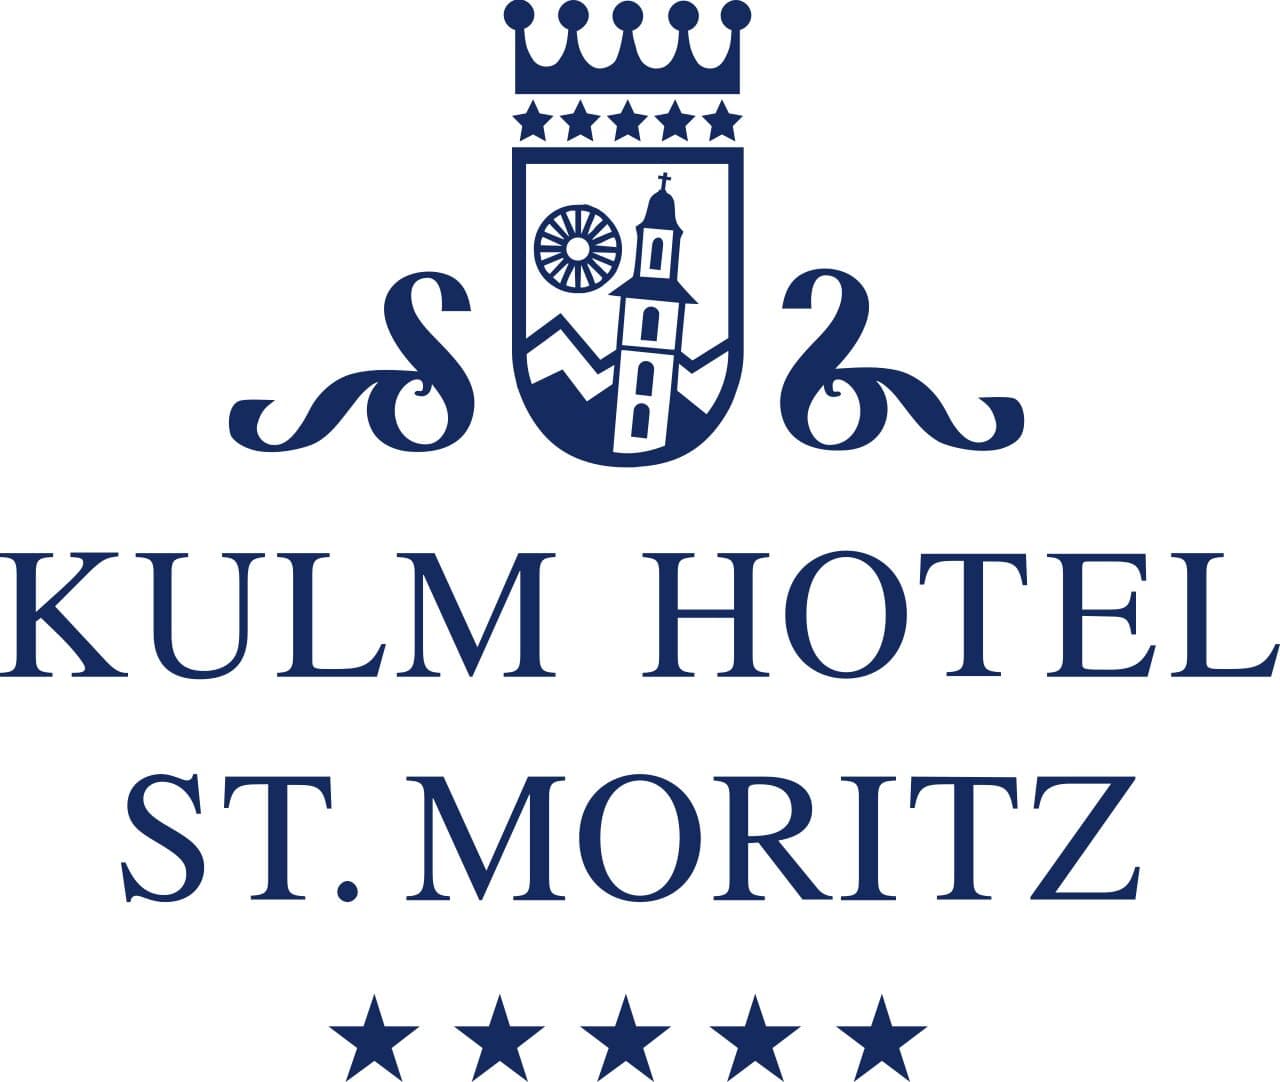 Kulm Hotel St. Moritz *****S